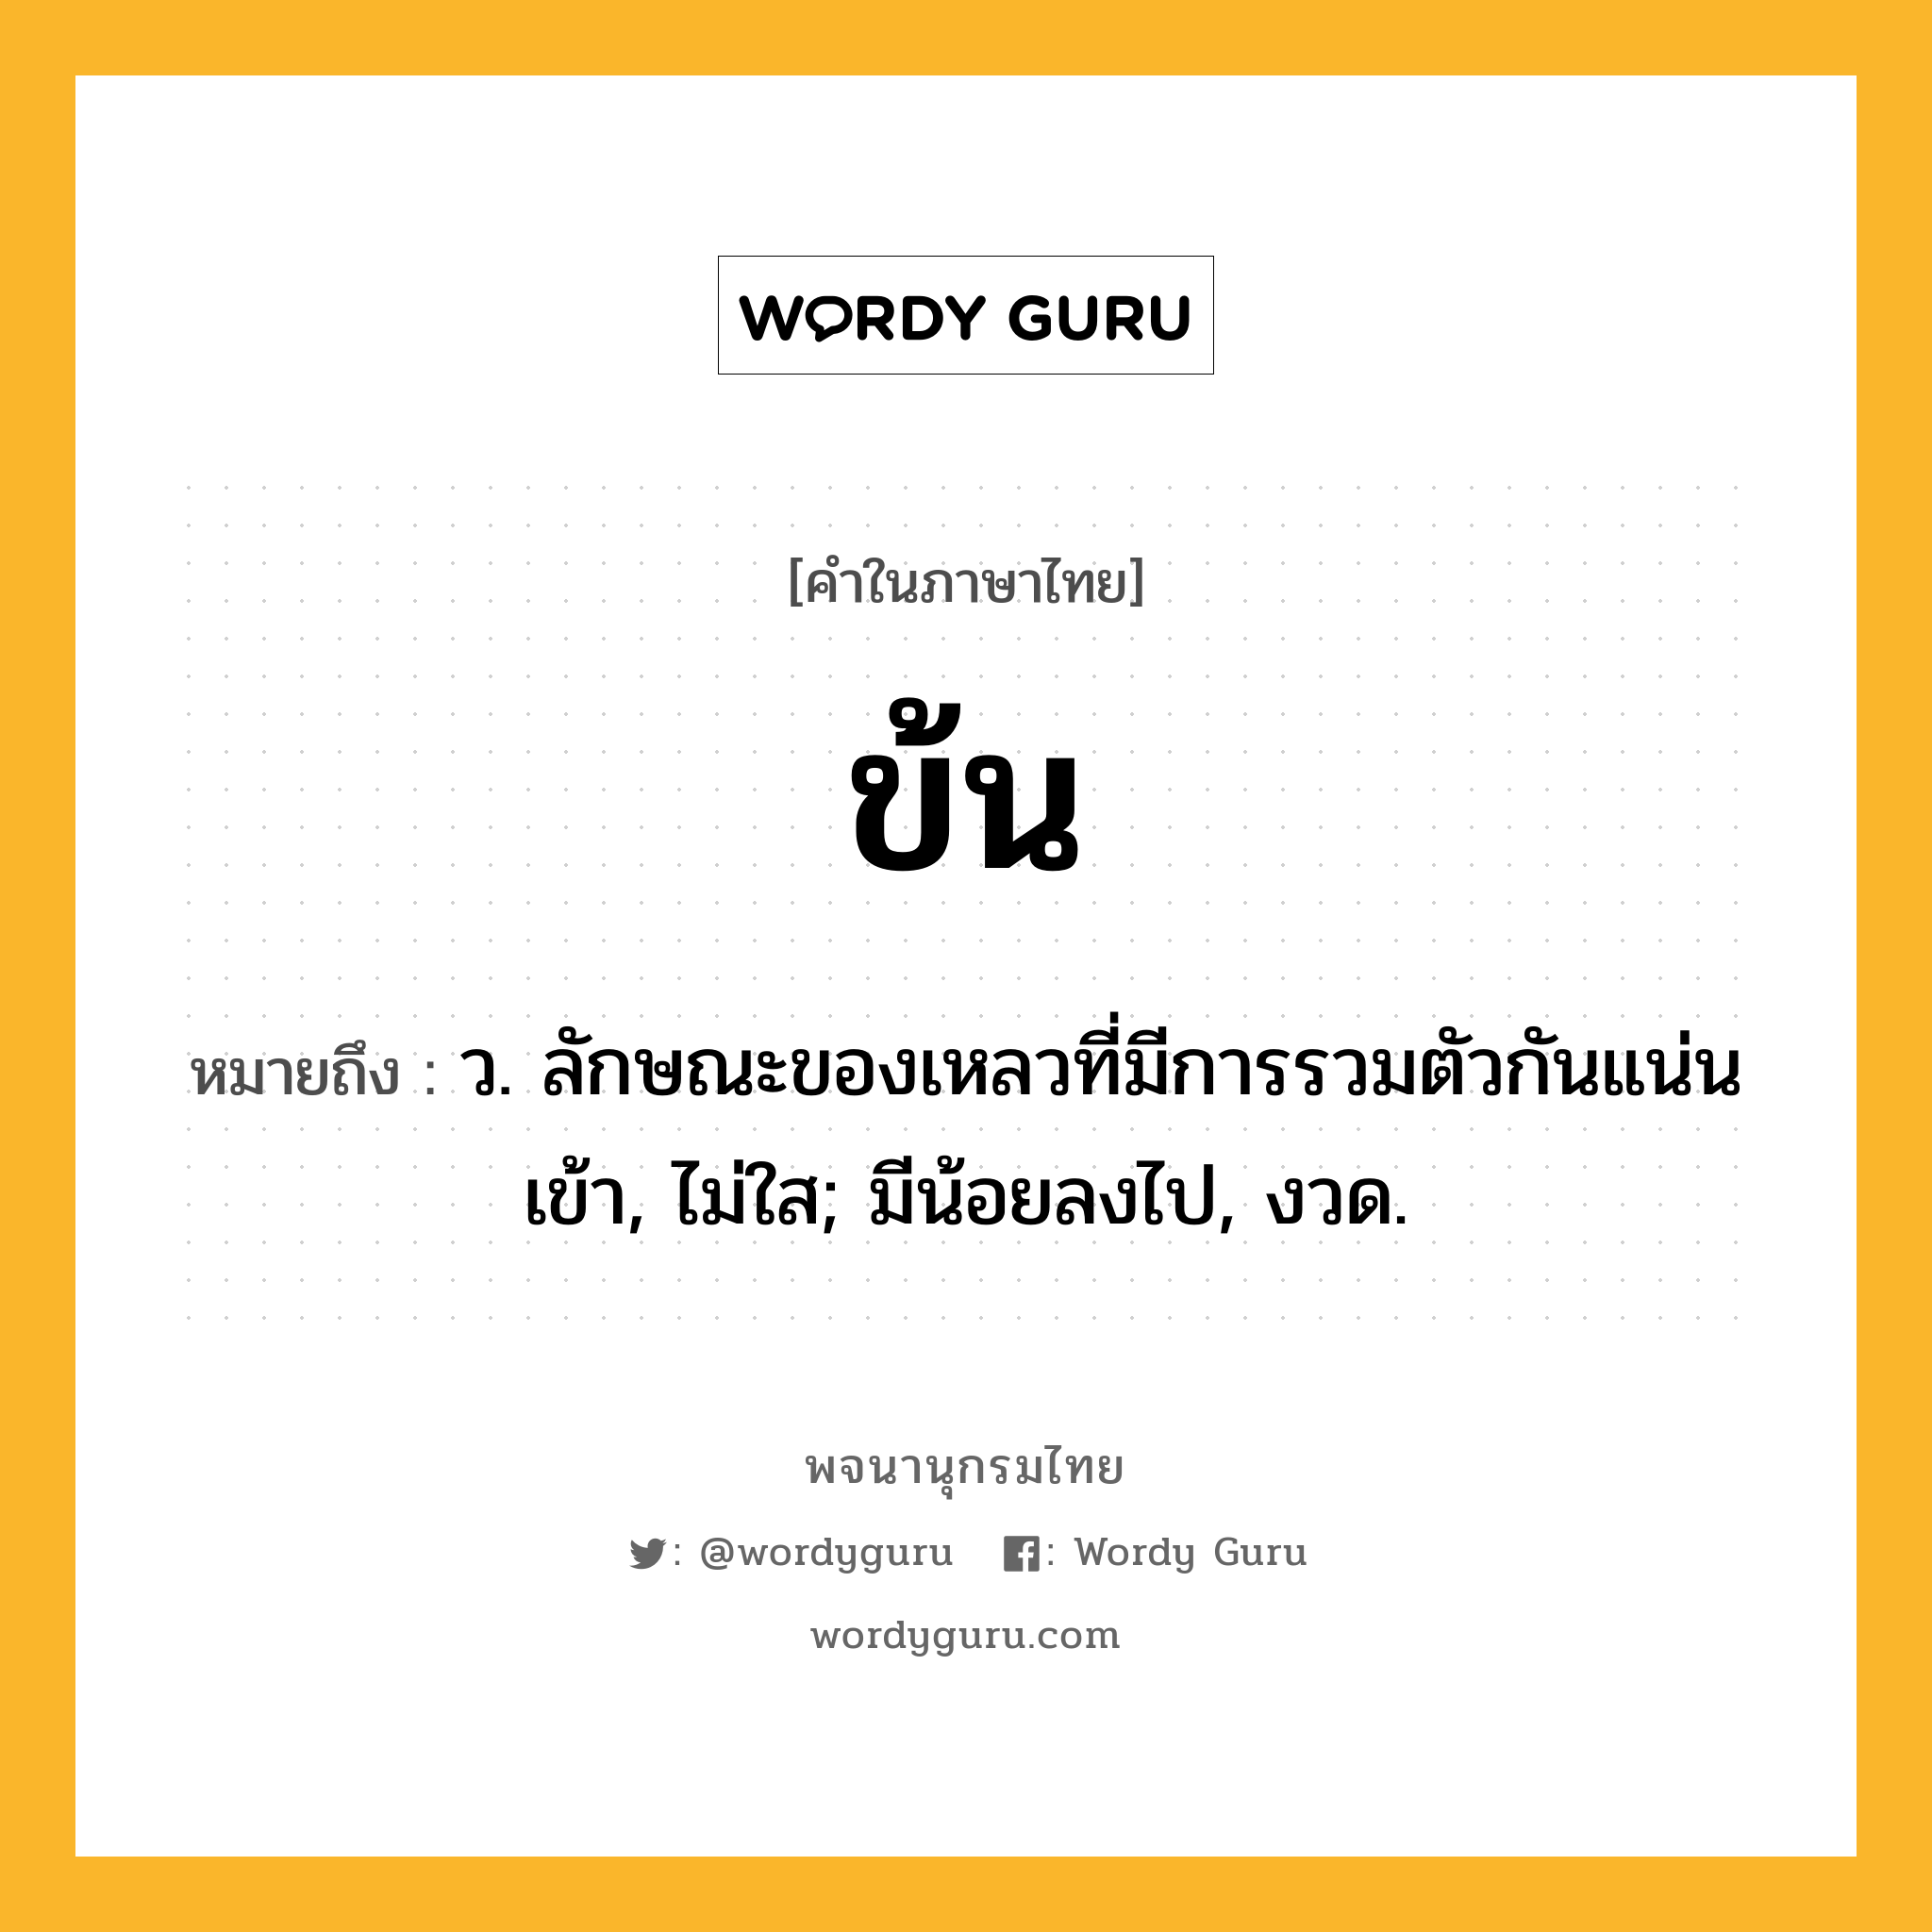 ข้น ความหมาย หมายถึงอะไร?, คำในภาษาไทย ข้น หมายถึง ว. ลักษณะของเหลวที่มีการรวมตัวกันแน่นเข้า, ไม่ใส; มีน้อยลงไป, งวด.